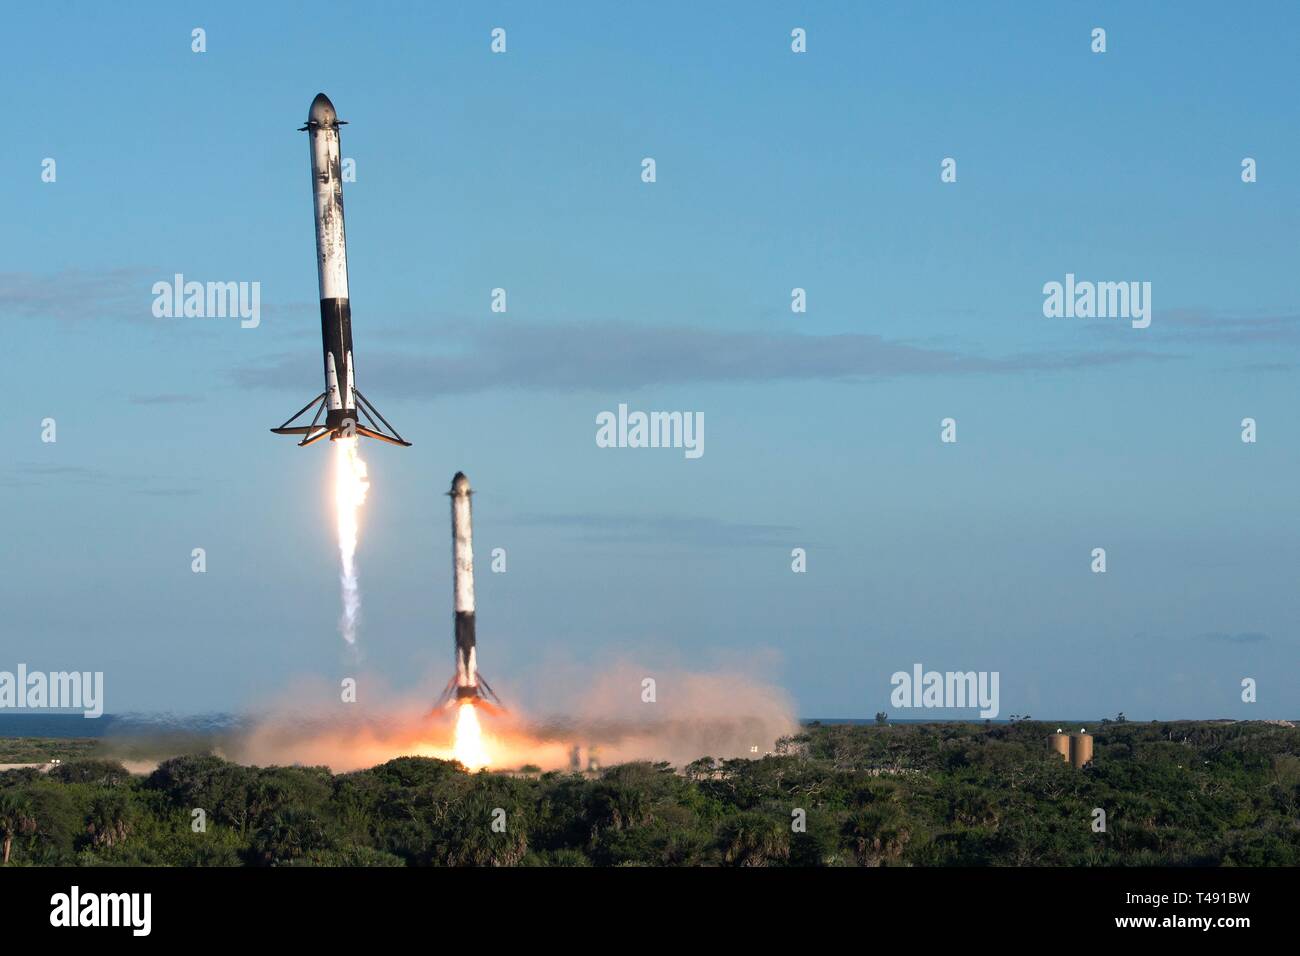 Zwei SpaceX Falcon Schwere wiederverwendbare Rocket Booster Land aufrecht nach Durchführung der saudi-arabischen Arabsat 6A communications Satelliten in eine Erdumlaufbahn vom Kennedy Space Center April 11, 2019 in Cape Canaveral, Florida. Dies ist der erste kommerzielle Start der massiven 27-Motor Koloss, der derzeit leistungsstärkste Rakete jetzt auf der Erde. Stockfoto